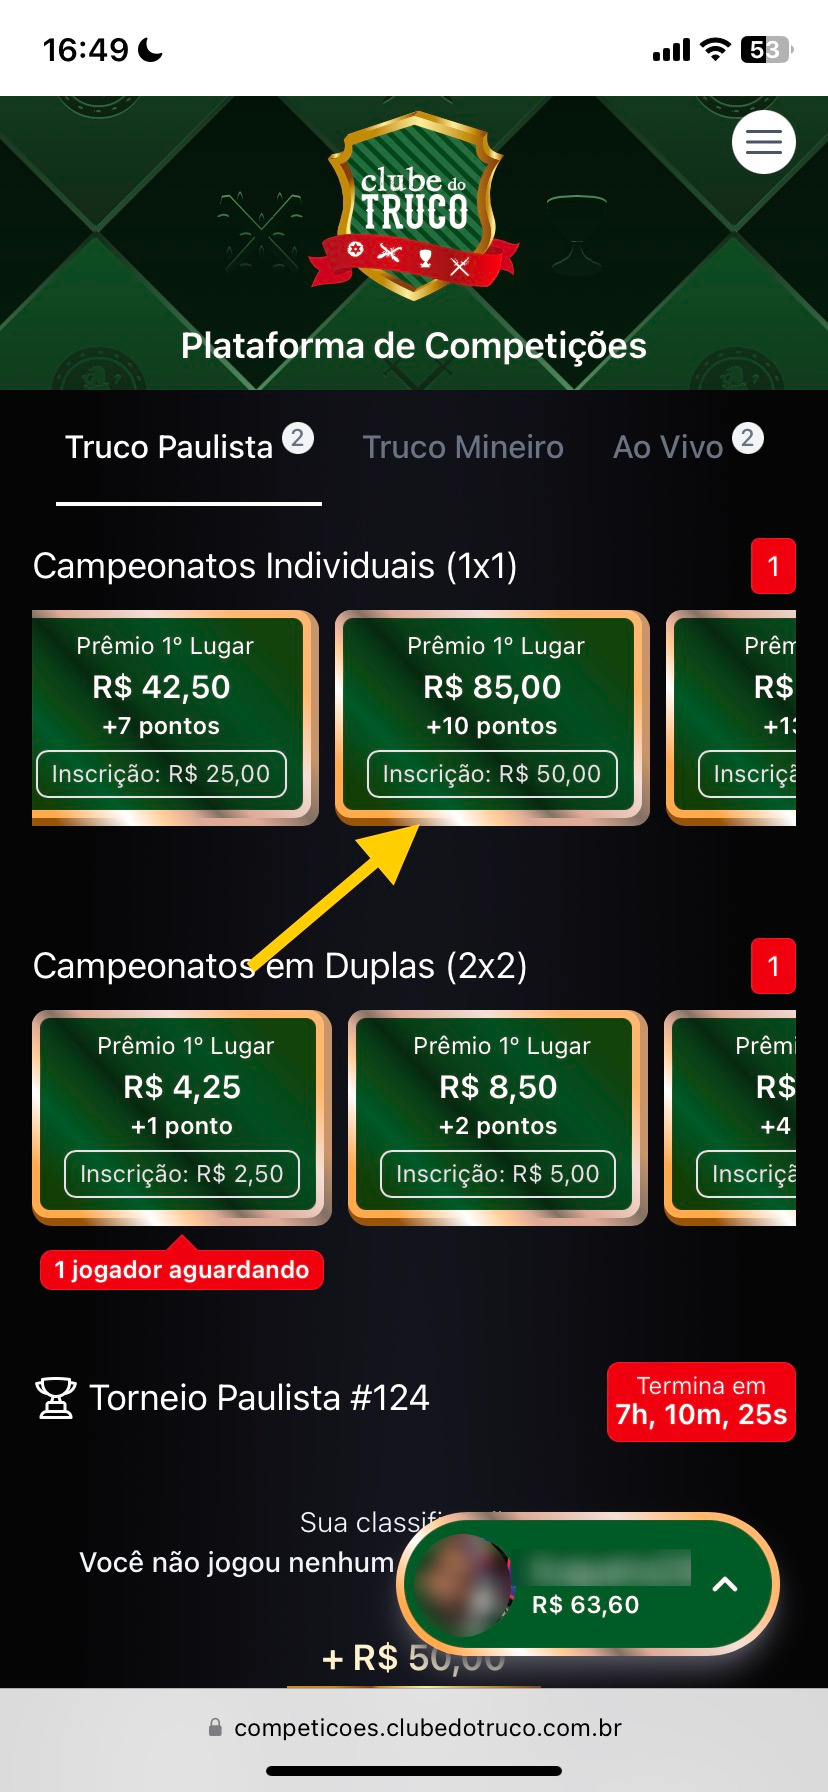 Melhor aplicativo de truco do Brasil,aposte e ganhe dinheiro de verdade., *MELHOR APLICATIVO DE TRUCO DO BRASIL,JOGUE MESAS E TORNEIOS VALENDO  DINHEIRO REAL*  Baixe o  aplicativo